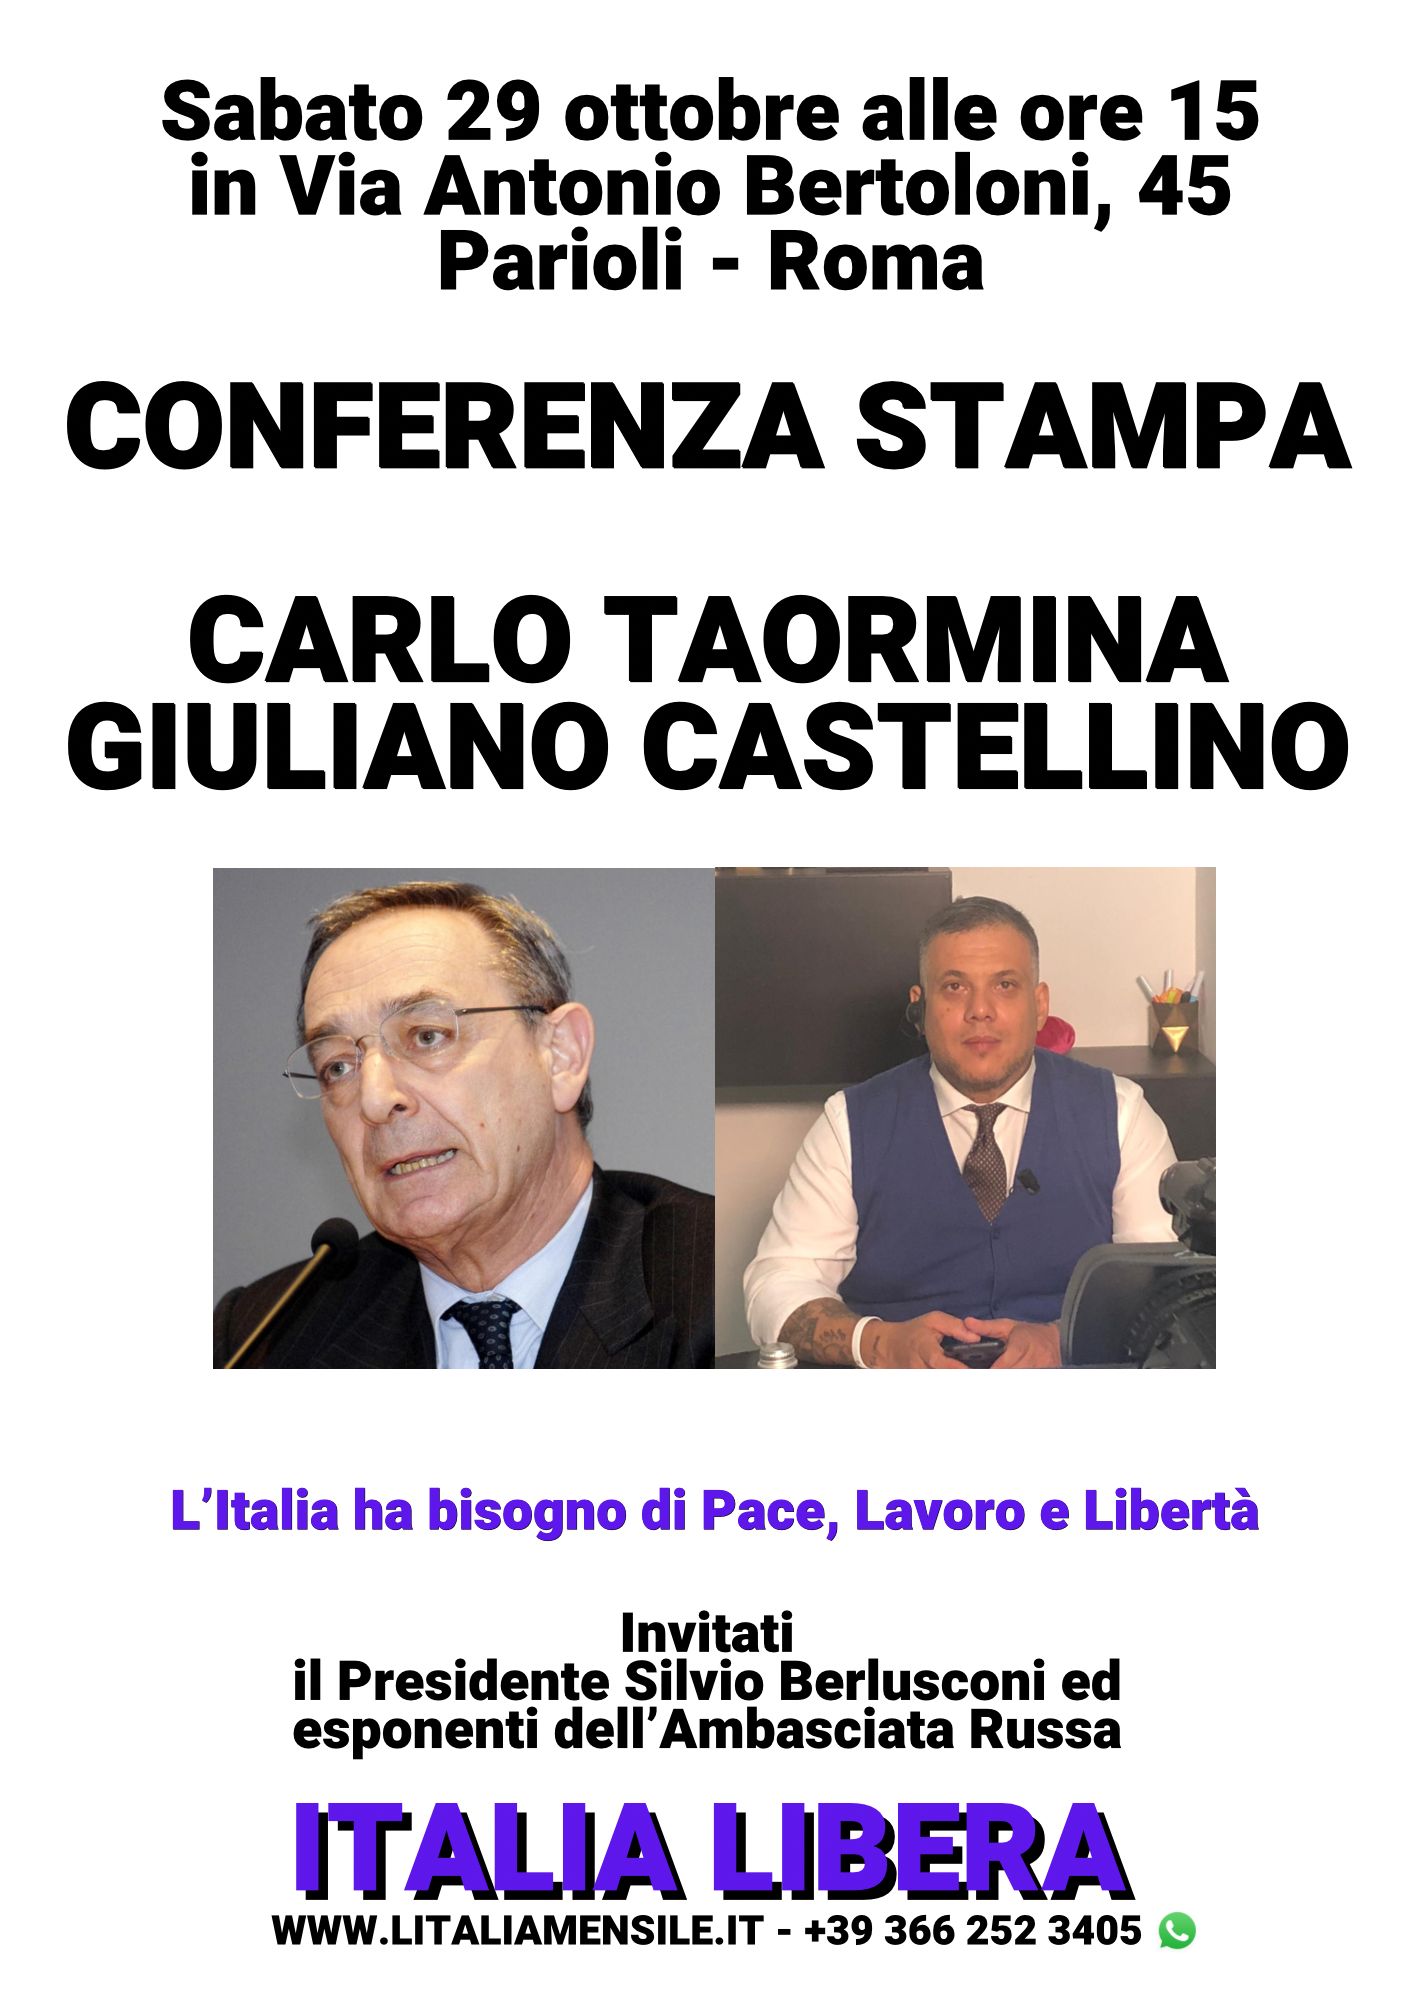 Taormina E Castellino (ITALIA LIBERA) : Sabato 29 Ottobre Conferenza Stampa Per La Pace Con Berlusconi, Ambasciata Russa E Trumpisti.